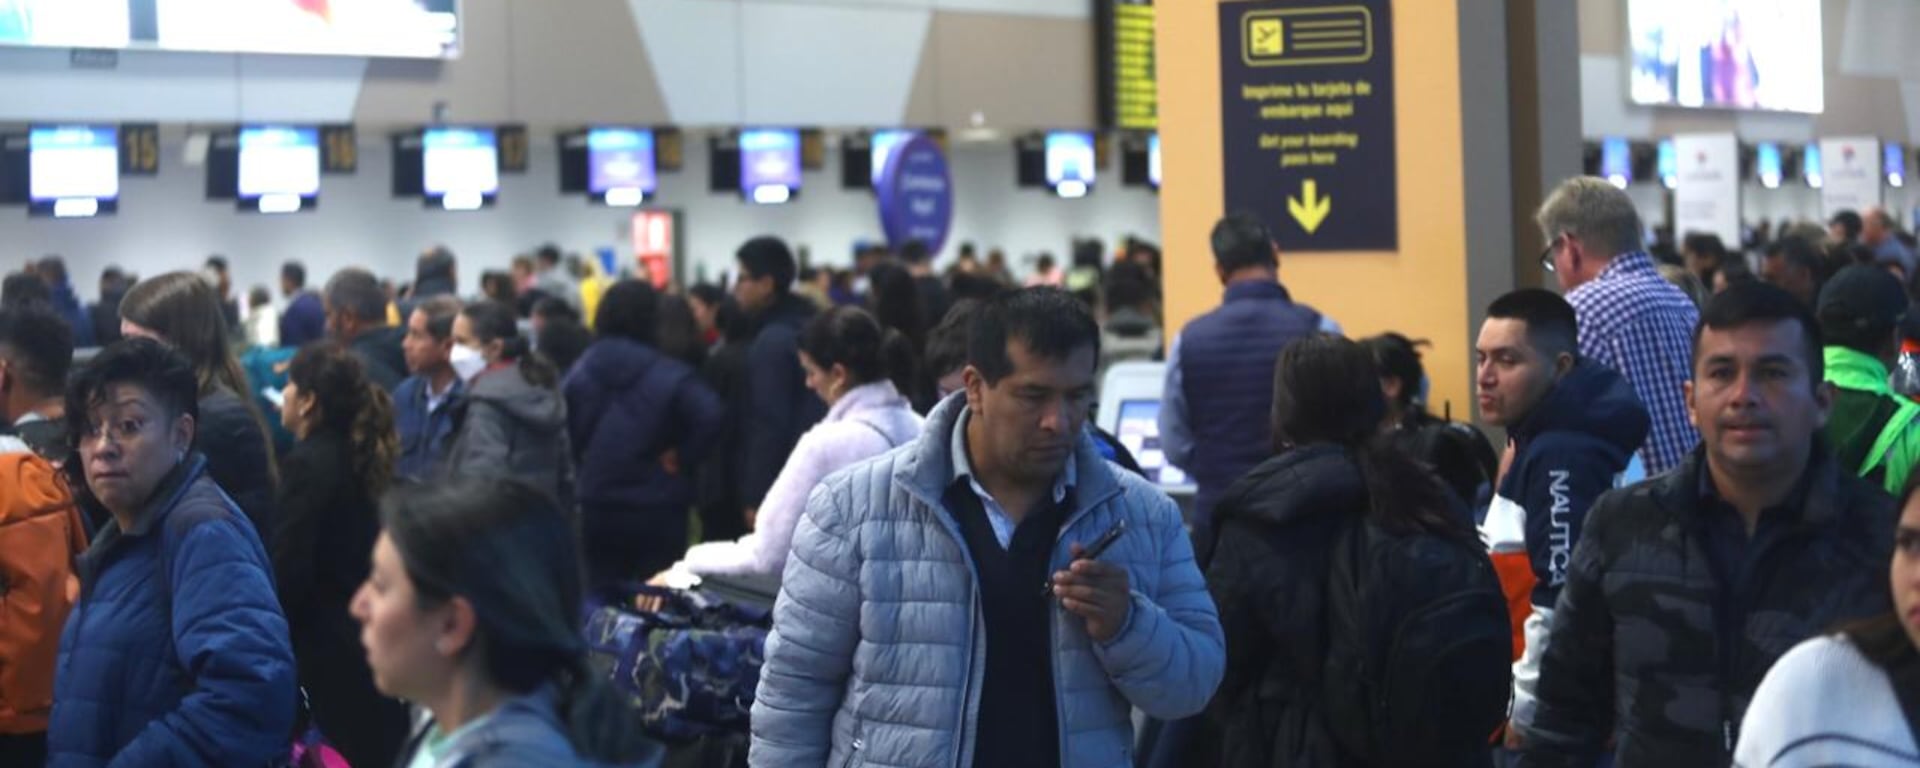 Suspensión de vuelos en el Aeropuerto Jorge Chávez: ¿Qué deben hacer los pasajeros con viajes programados esta semana?